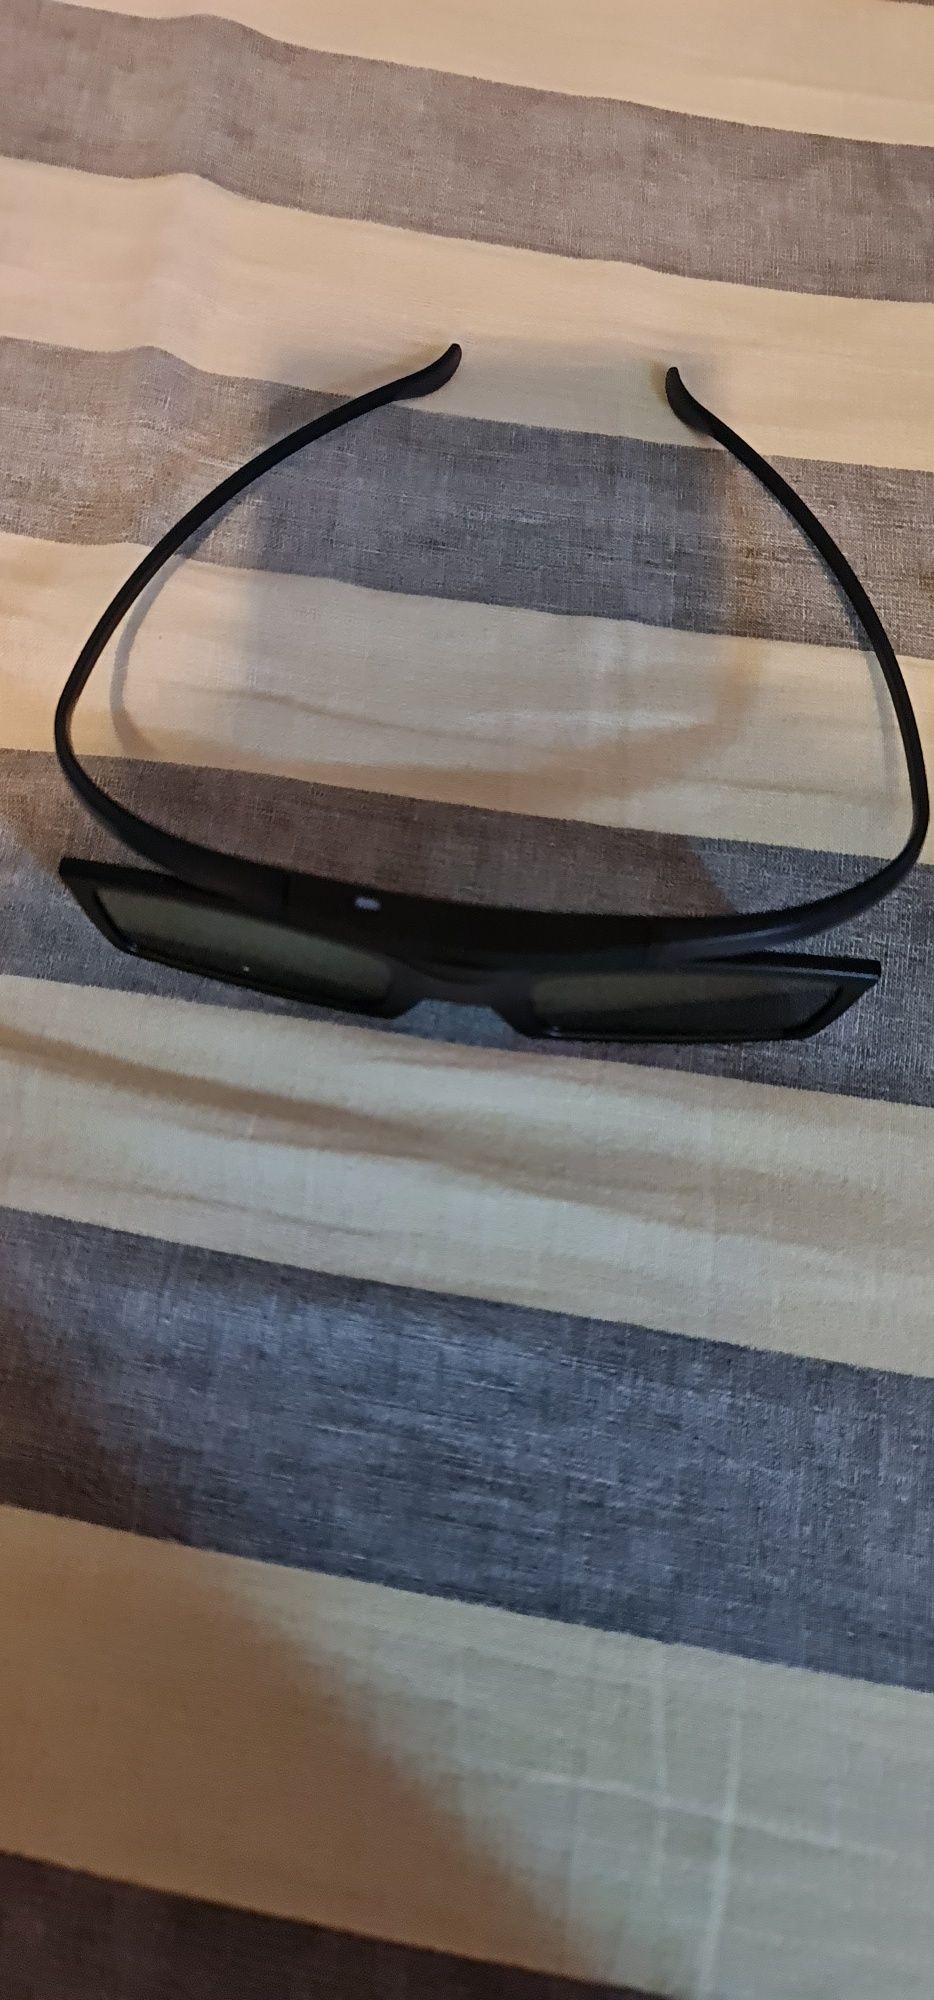 Ochelari 3D samsung și LG